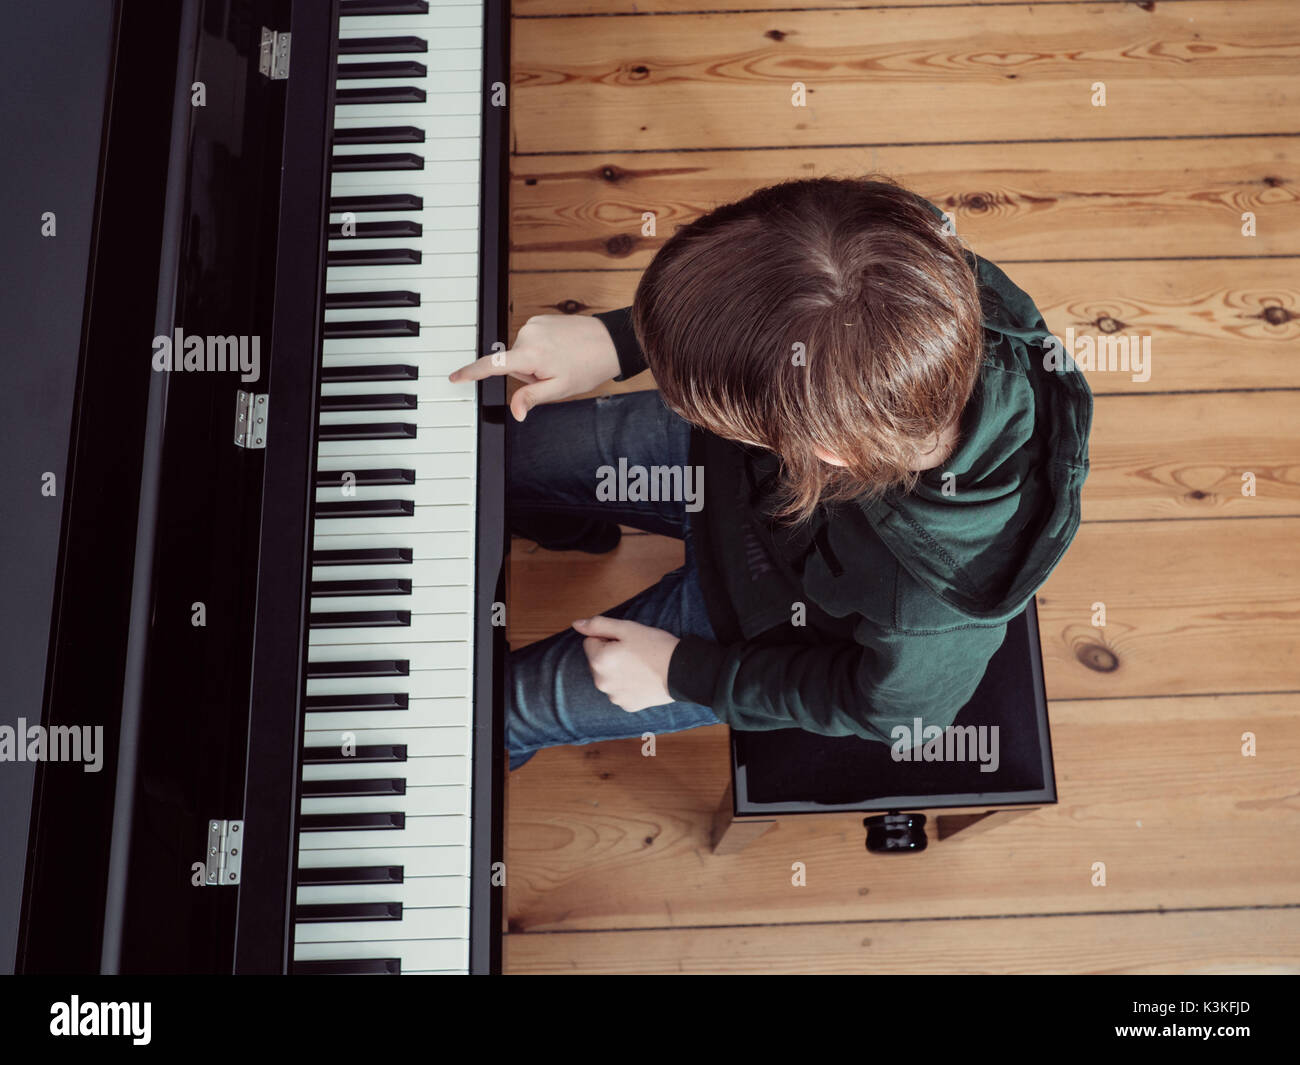 Empezar A Tocar El Piano Todo Lo Que Tienes Que Saber Royal Pianos |  sptc.edu.bd